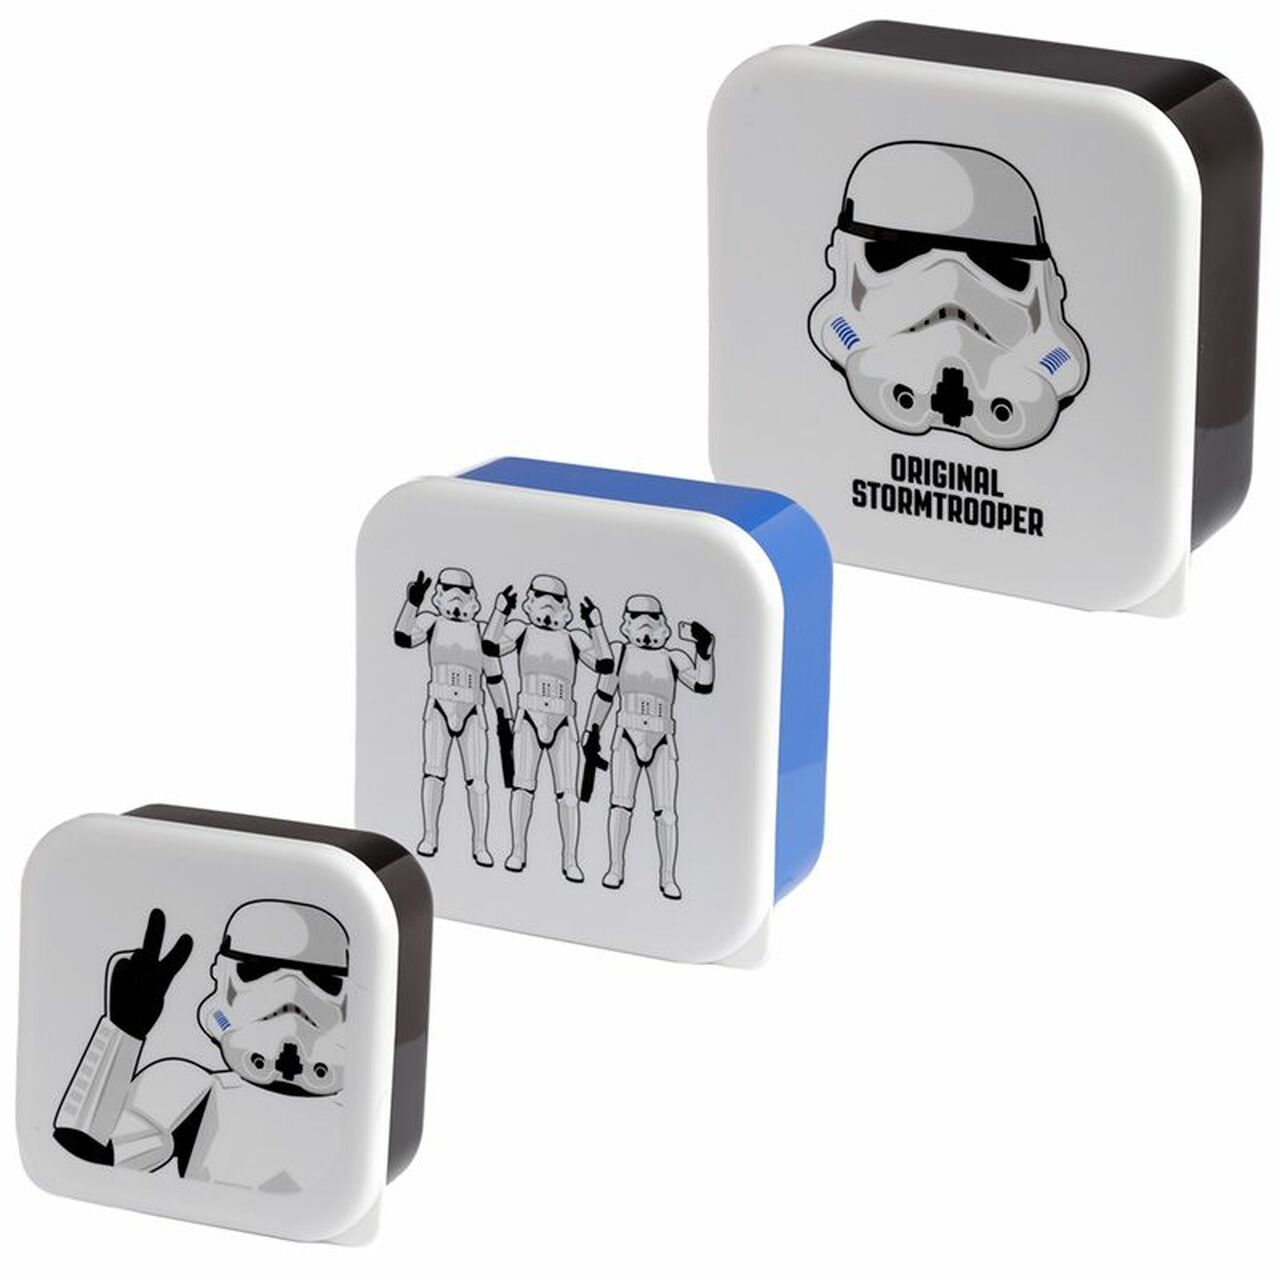 Star Wars storm trooper pop culture storage box